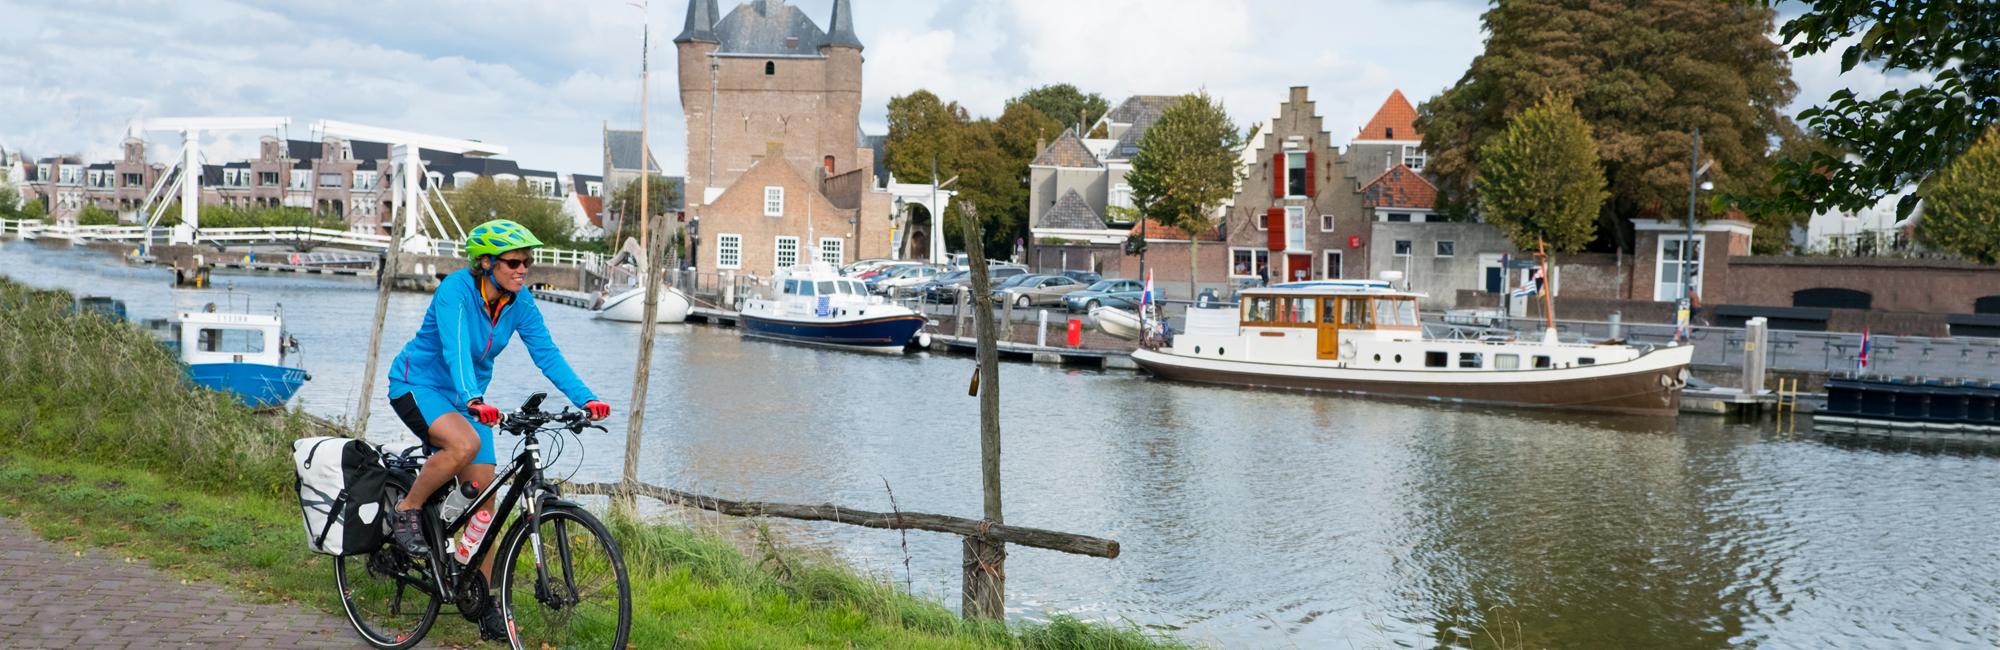 Fietsen in Nederland? Boek uw fietsvakantie bij Dutch Bike Tours!